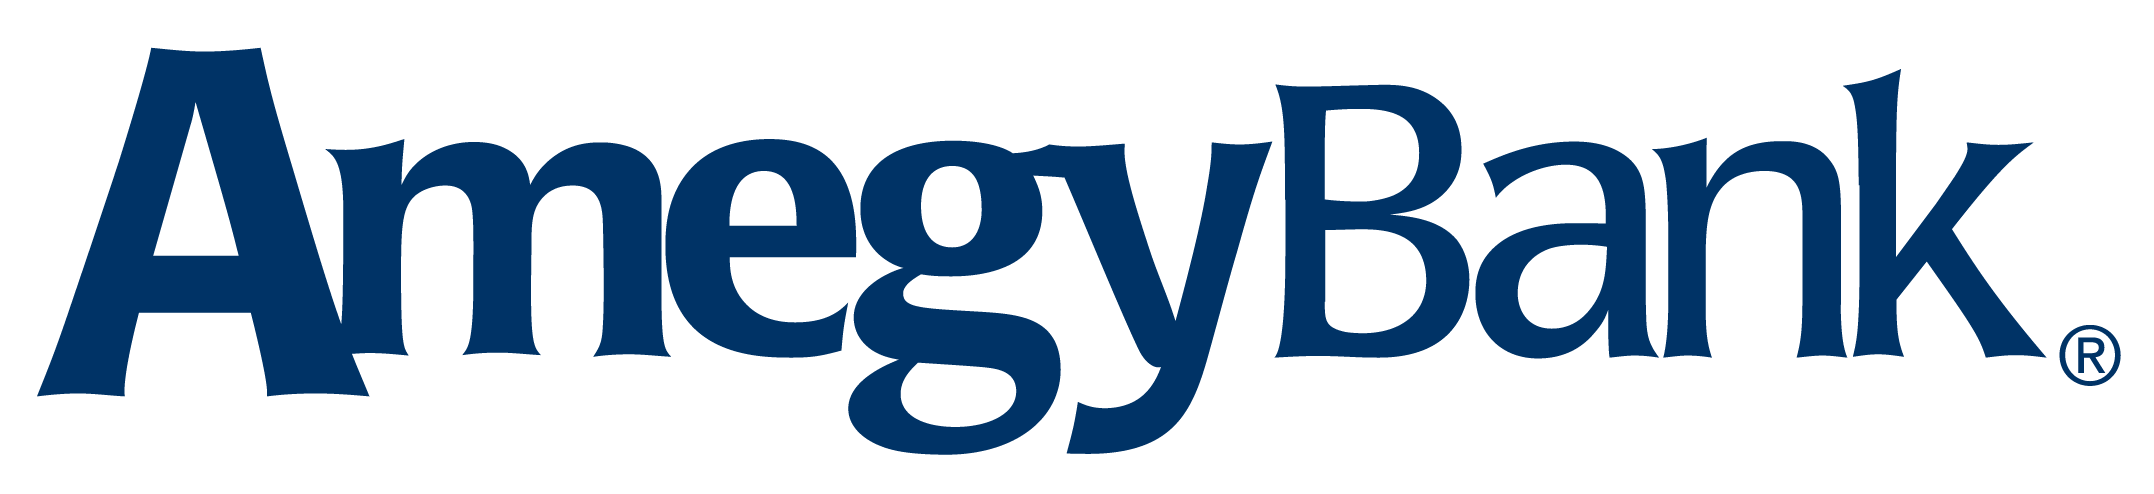 AmegyBank-logo.png